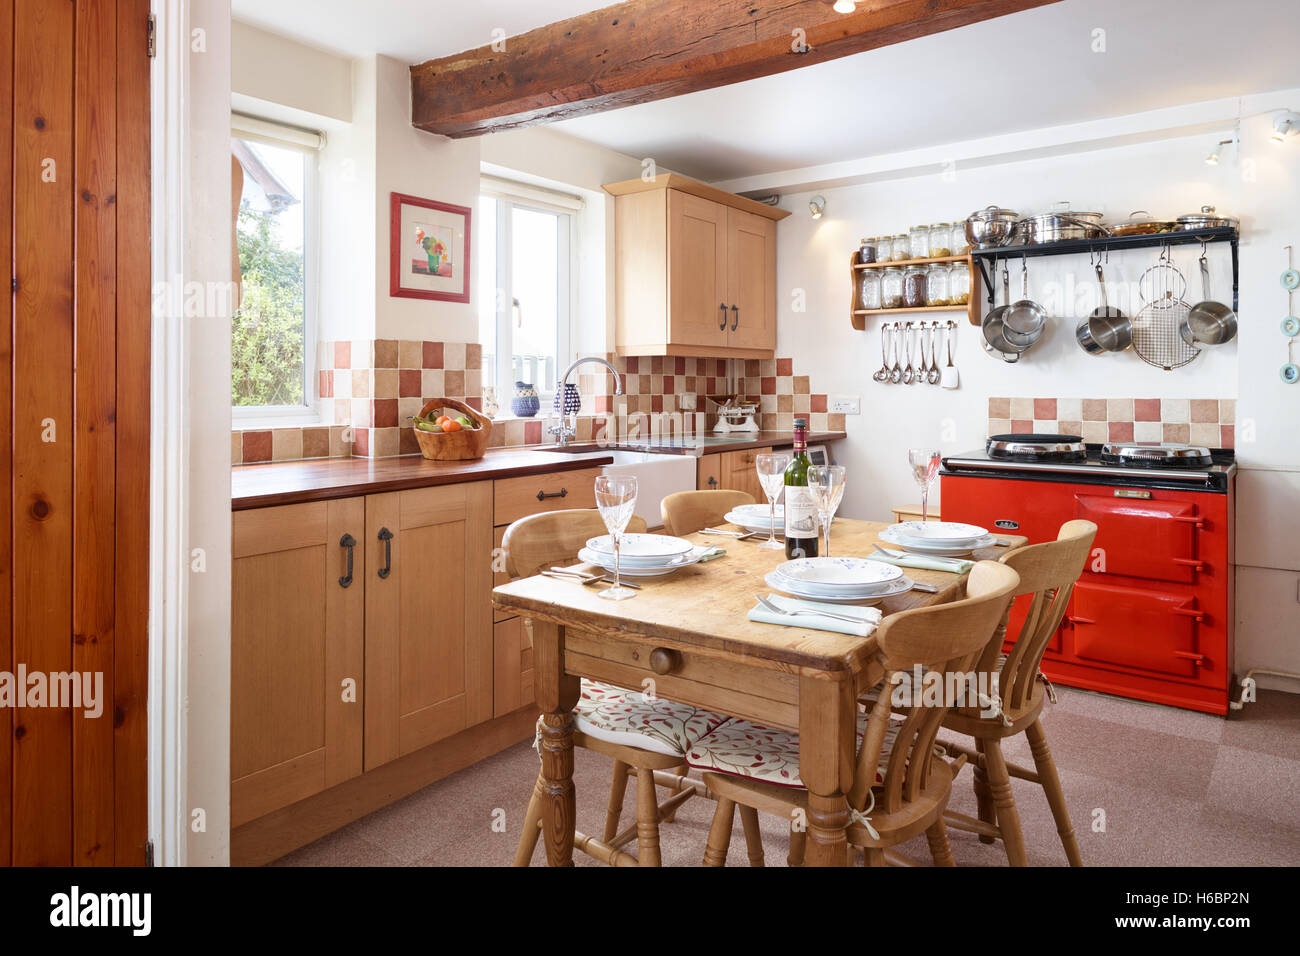 Eine traditionelle, frische Landhausküche zeigt eine rote Aga, Tabelle, Einheiten & Arbeitsflächen. Gloucestershire, UK Stockfoto